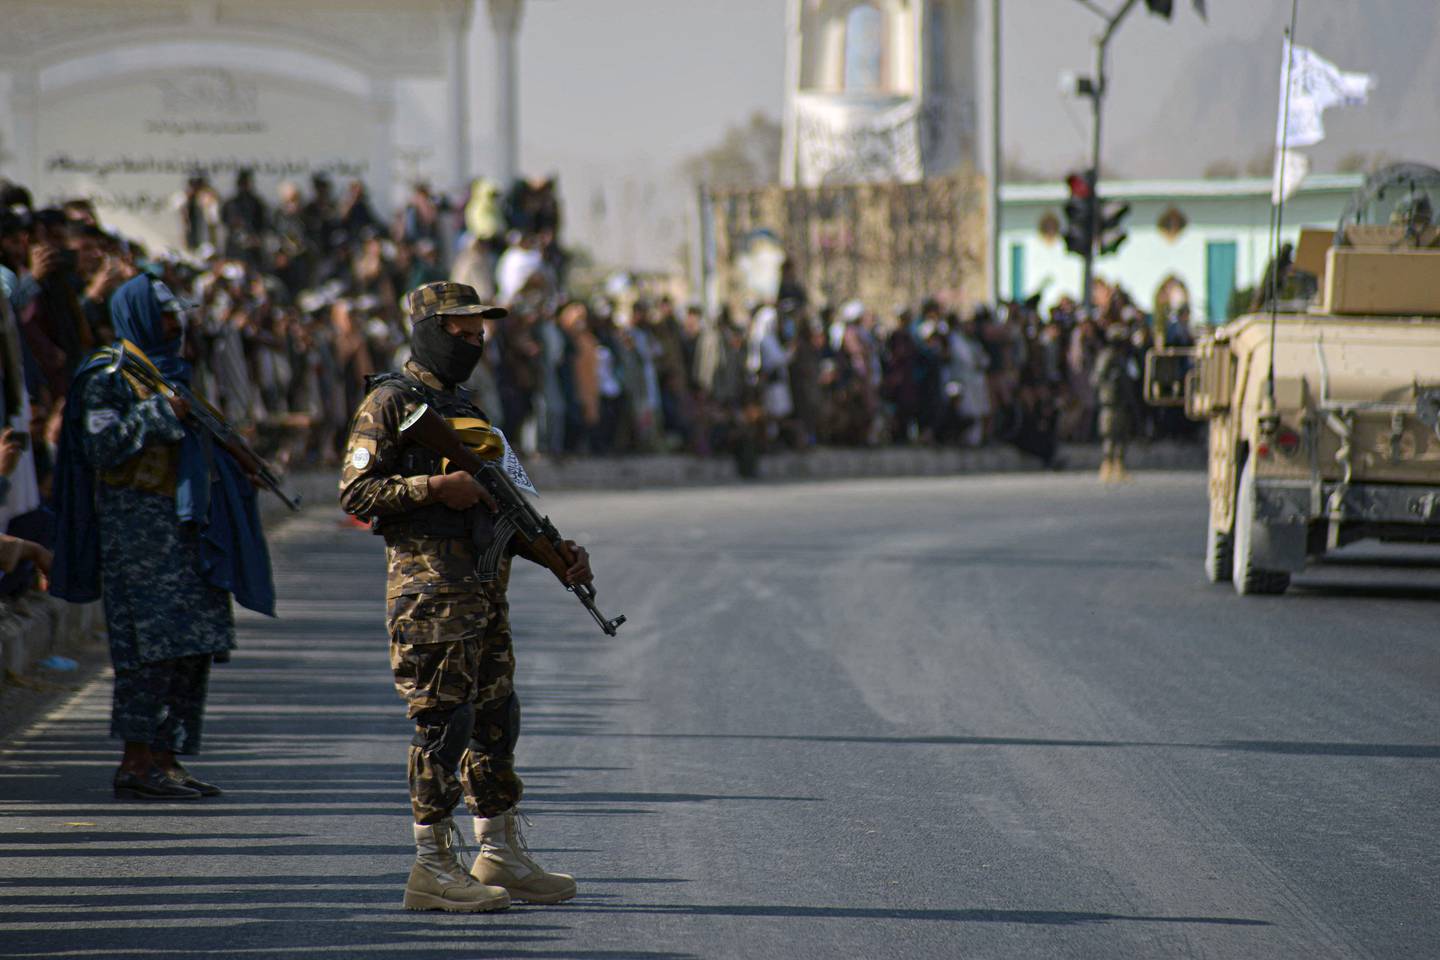 Taliban tok over makta i Afghanistan kort tid etter at de internasjonale styrkene trakk seg ut. Mandag viste Taliban-styrkene seg i gatene i Kandahar under en militærparade.